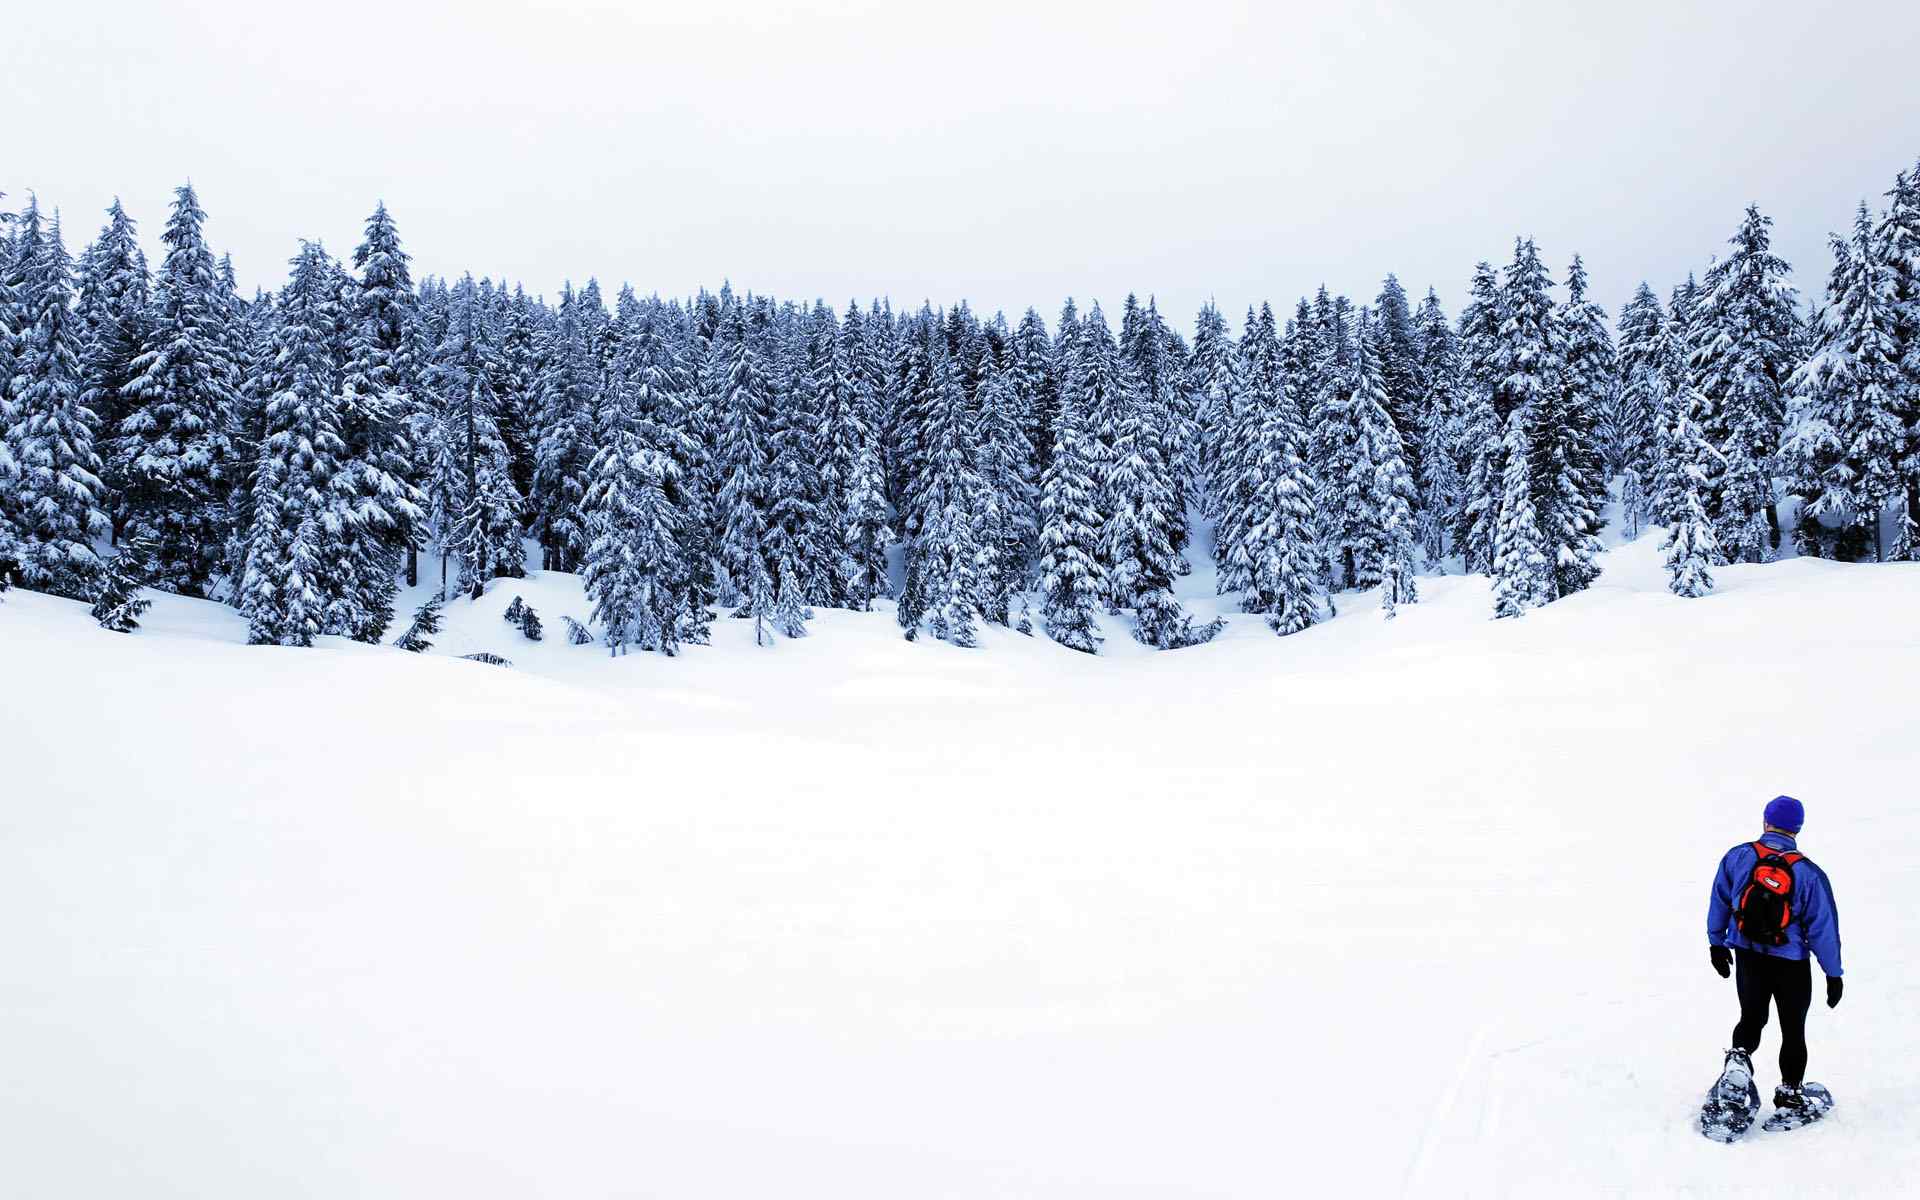 冬日雪景壁纸